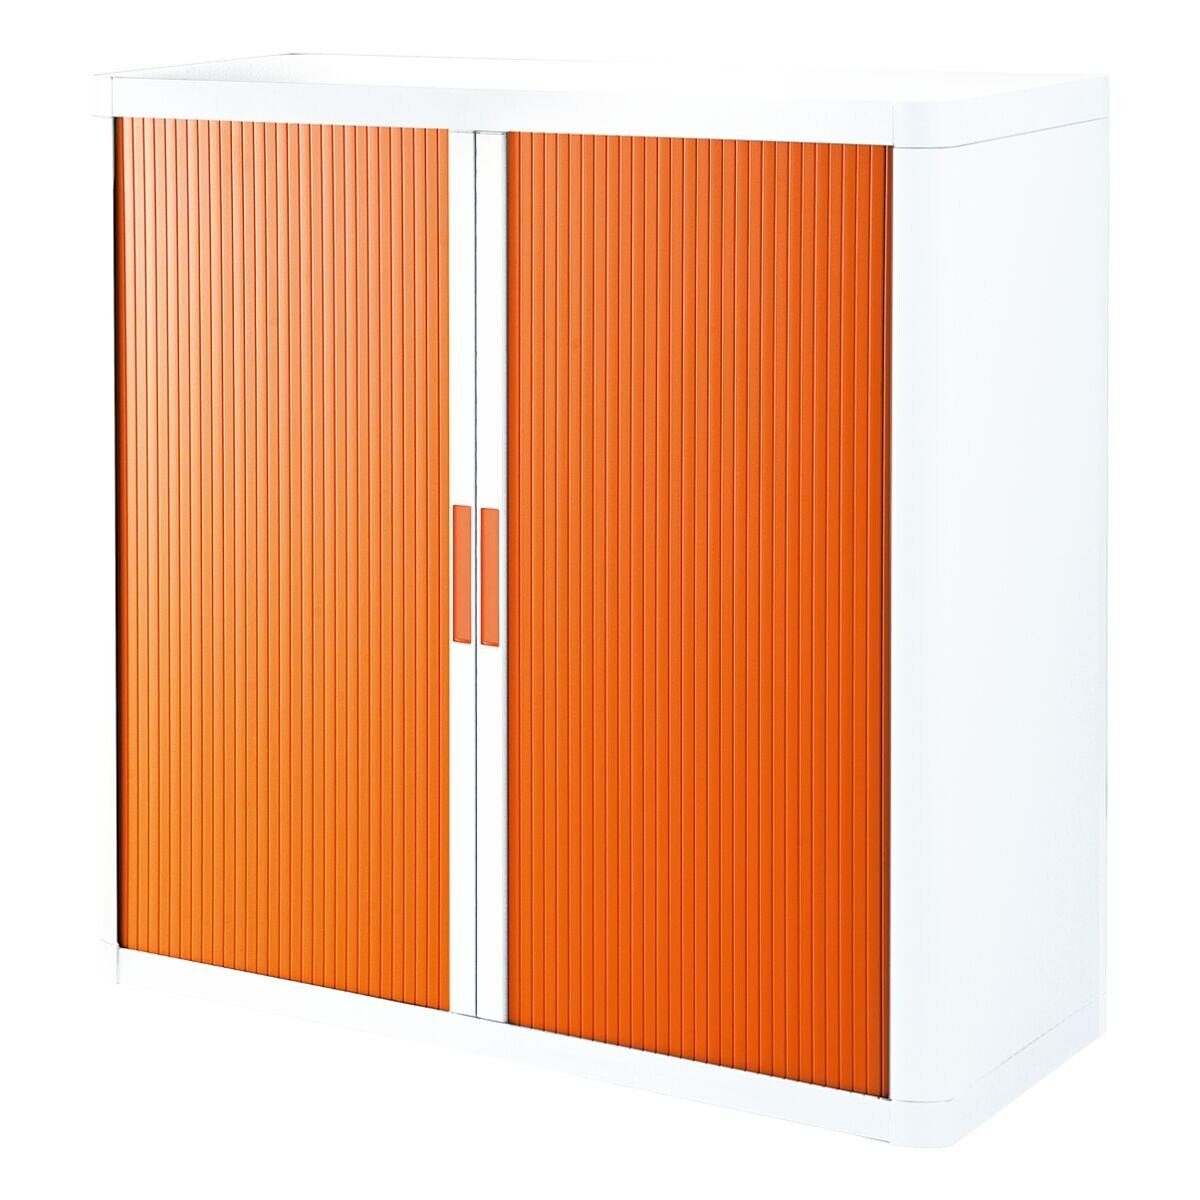 Rollladenschrank weiß/orange Griff Korpus EASYOFFICE farbig, weiß, Lamellen farbig easyOffice